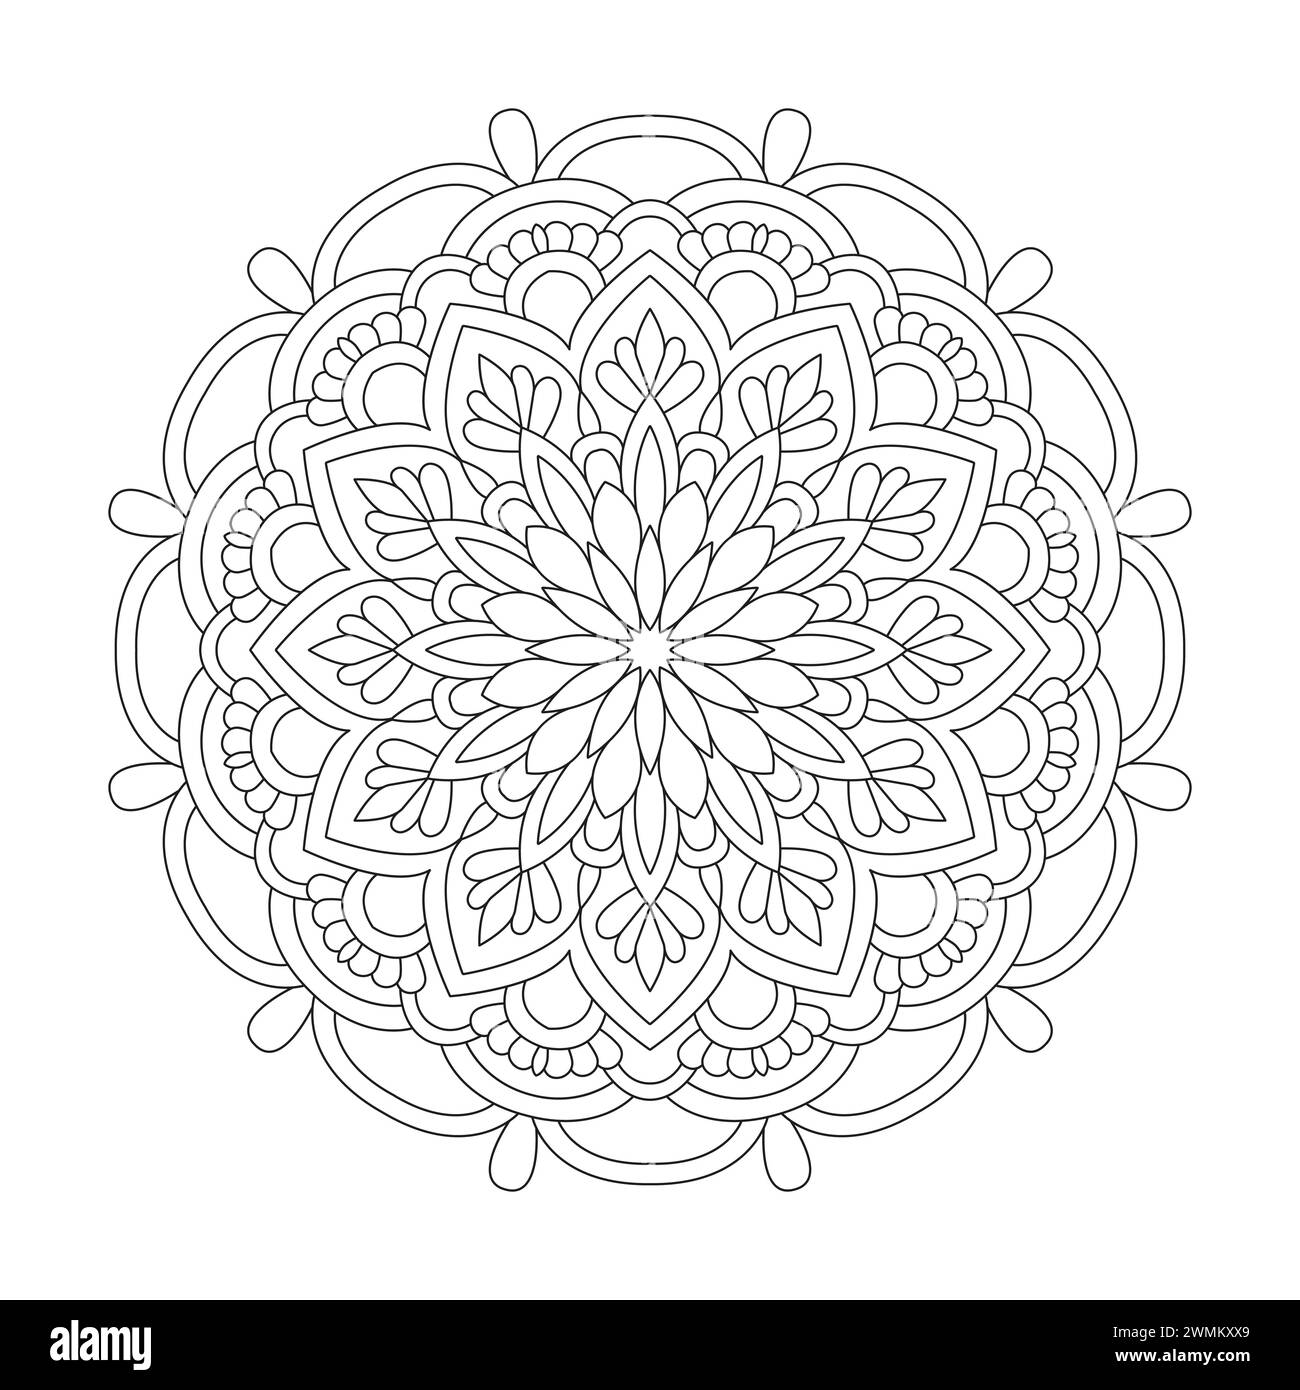 Leuchtende Entspannung Mandala Coloring Book Page für kdp Book Interior. Friedliche Blütenblätter, Fähigkeit zum Entspannen, Gehirnerlebnisse, harmonischer Hafen, friedlich Stock Vektor